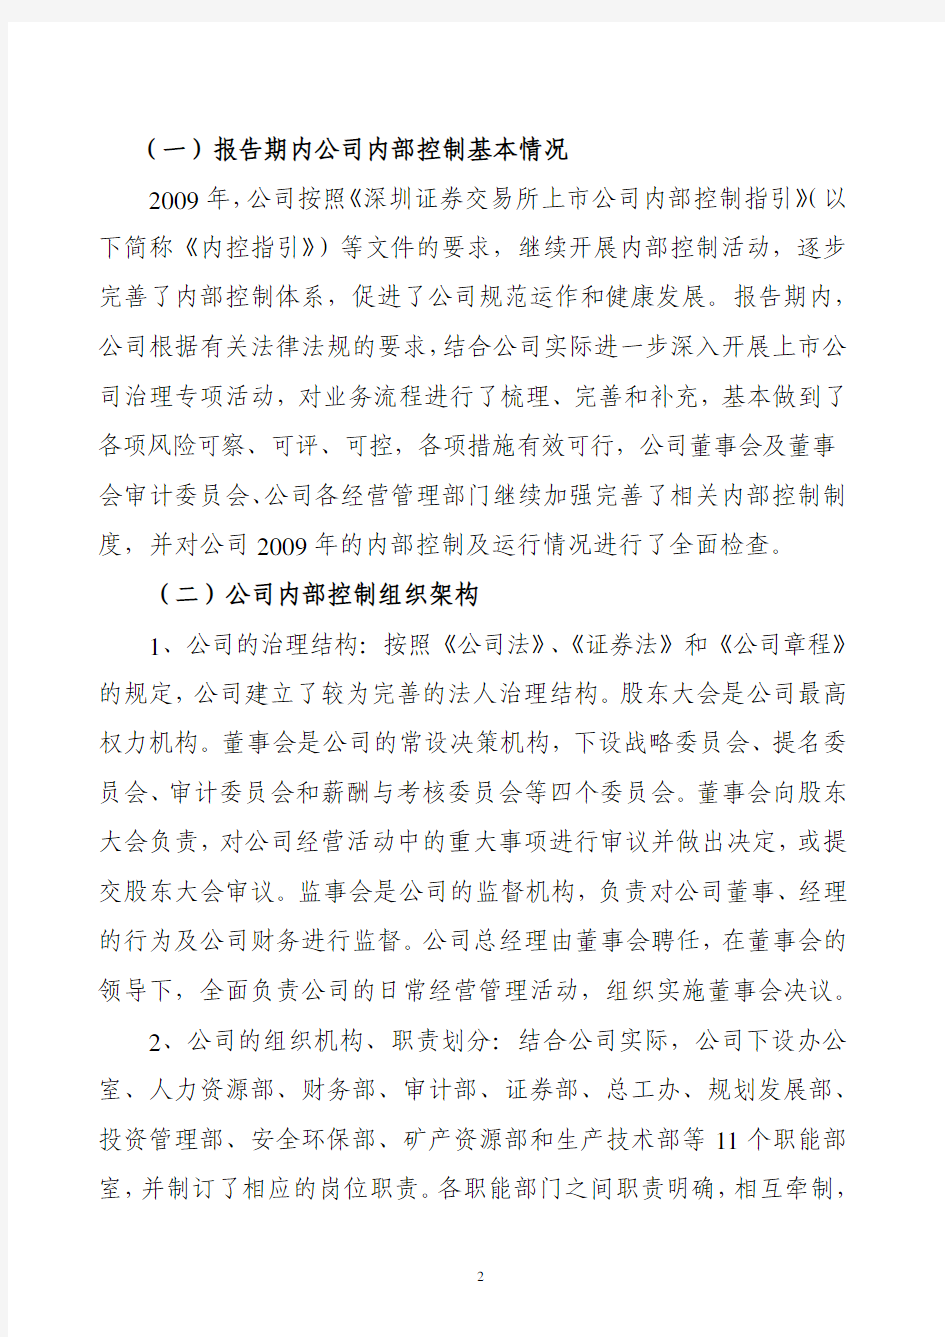 云南铜业：2009年度内部控制自我评价报告 2010-04-09